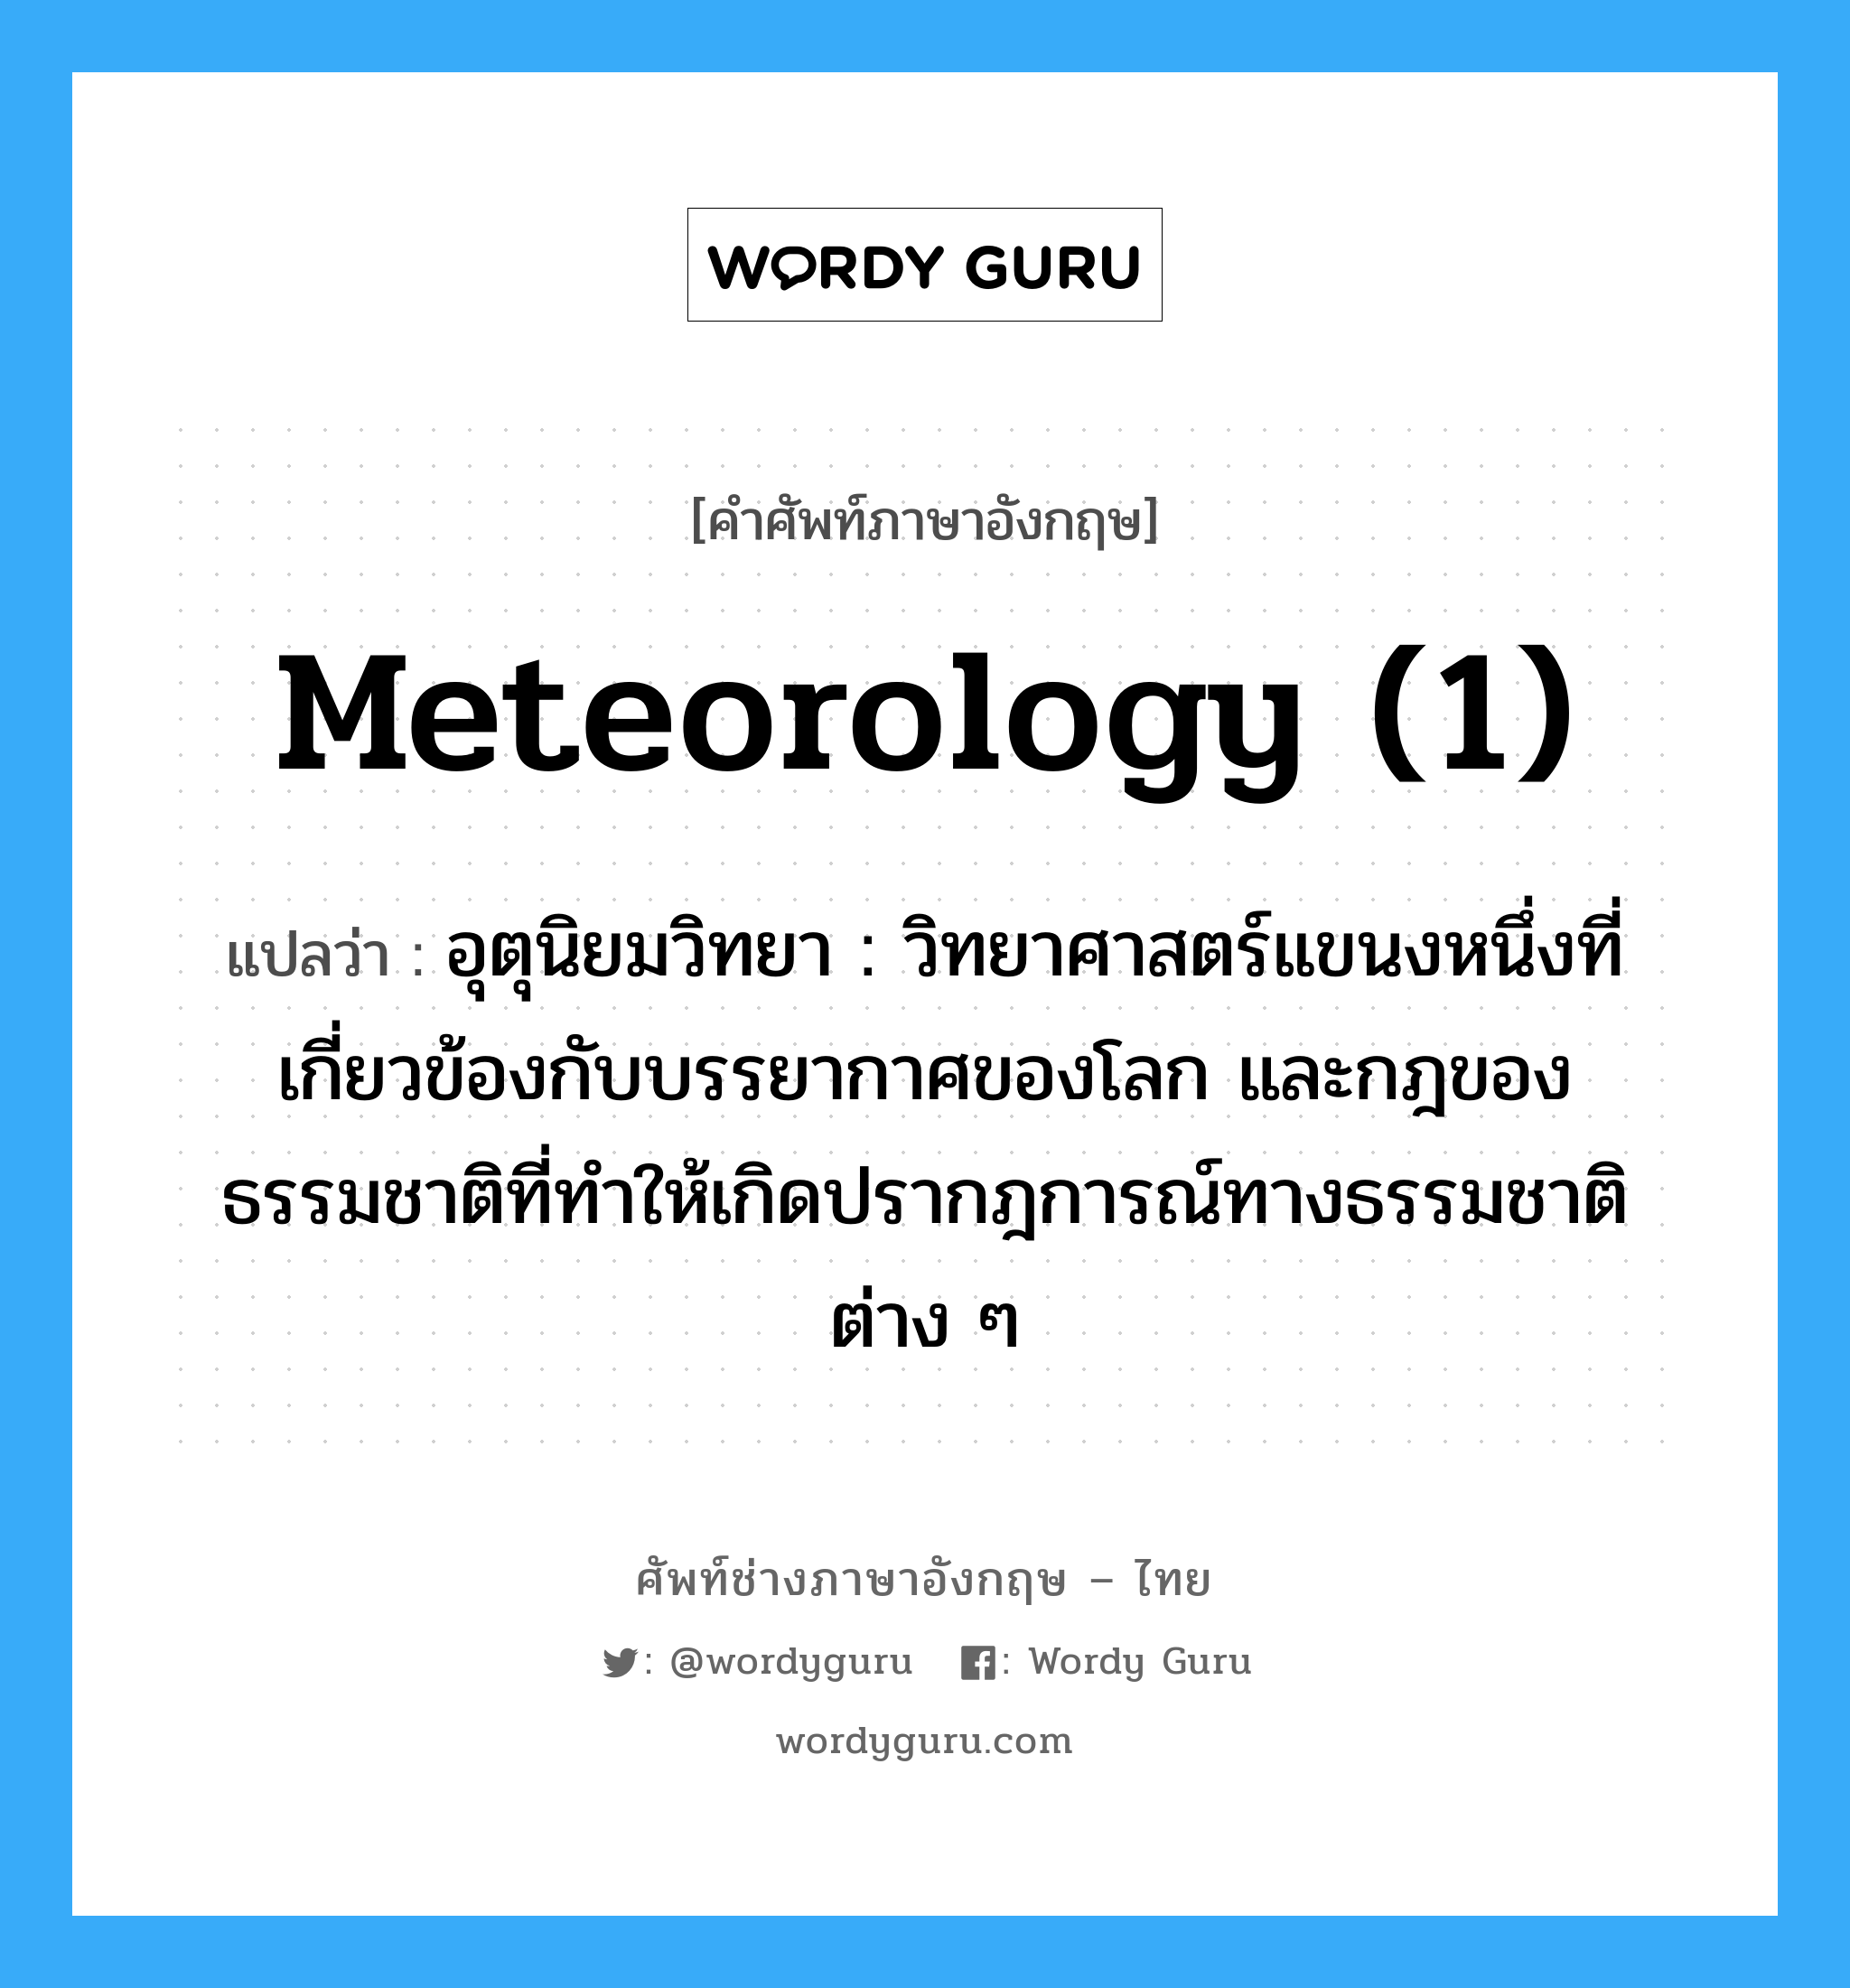 meteorology (1) แปลว่า?, คำศัพท์ช่างภาษาอังกฤษ - ไทย meteorology (1) คำศัพท์ภาษาอังกฤษ meteorology (1) แปลว่า อุตุนิยมวิทยา : วิทยาศาสตร์แขนงหนึ่งที่เกี่ยวข้องกับบรรยากาศของโลก และกฎของธรรมชาติที่ทำให้เกิดปรากฎการณ์ทางธรรมชาติต่าง ๆ